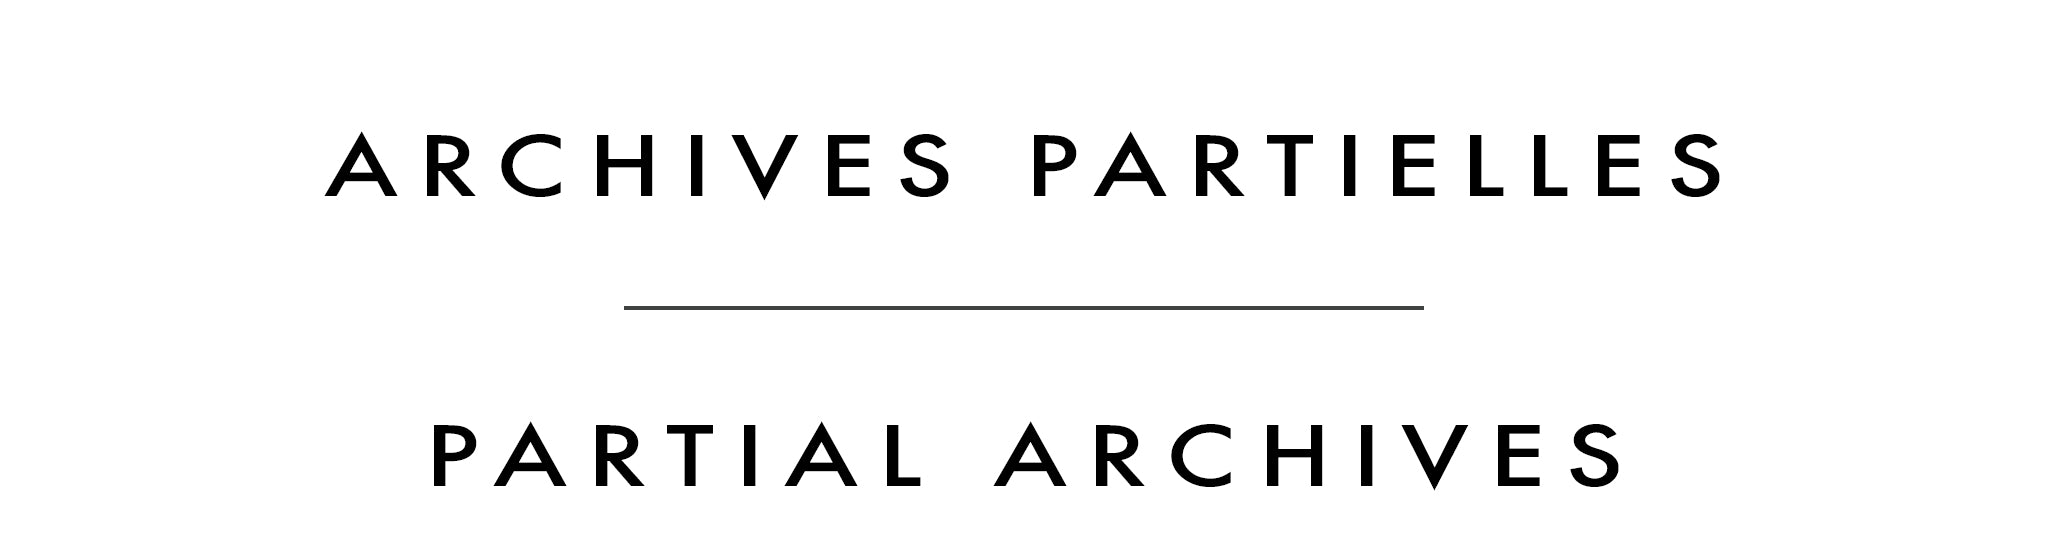 Archives partielles | Partial Archives | Maryann Hendriks